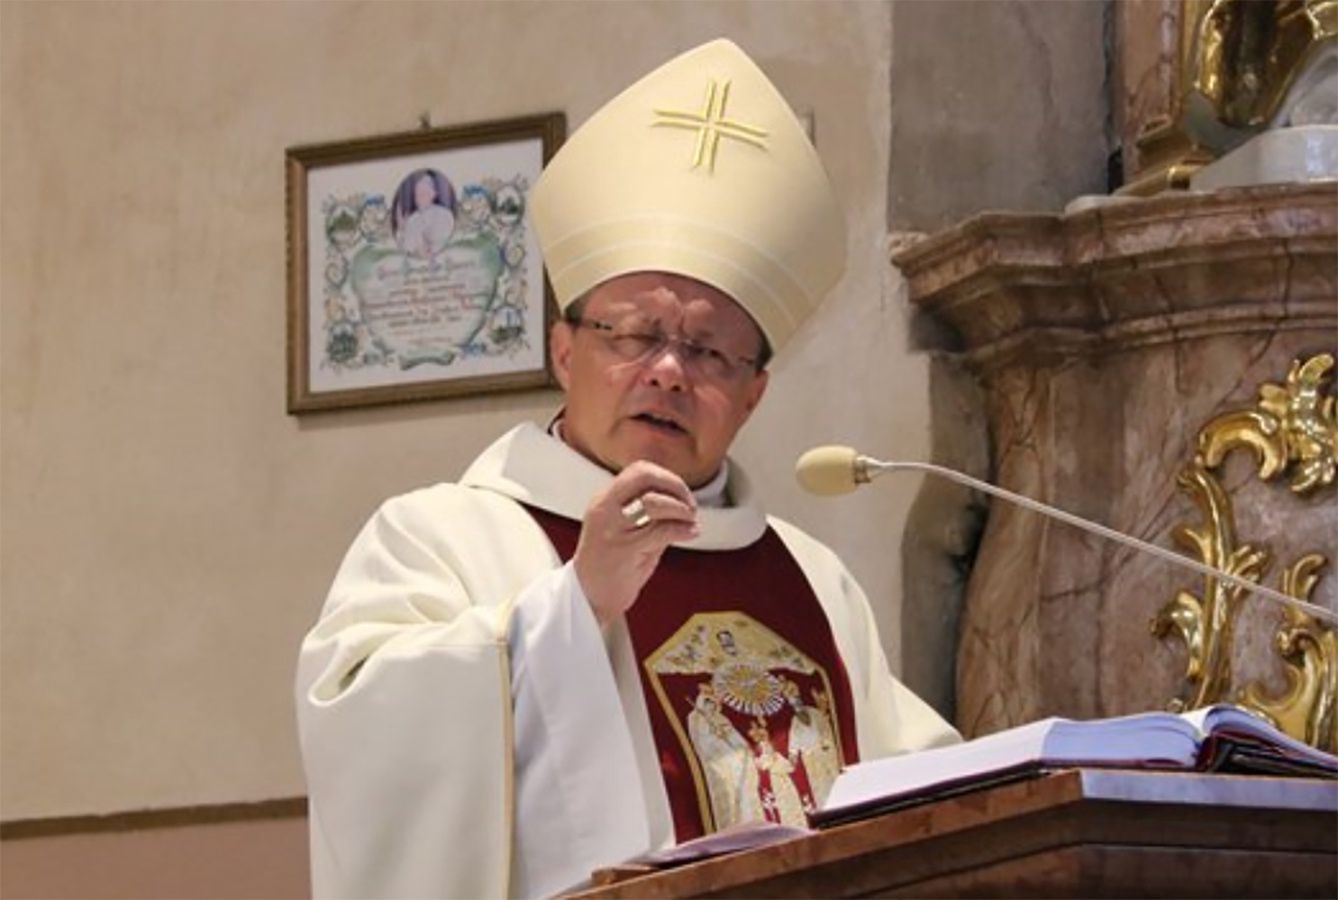 Wielkie wyróżnienie dla polskiego biskupa. Nominował go sam papież